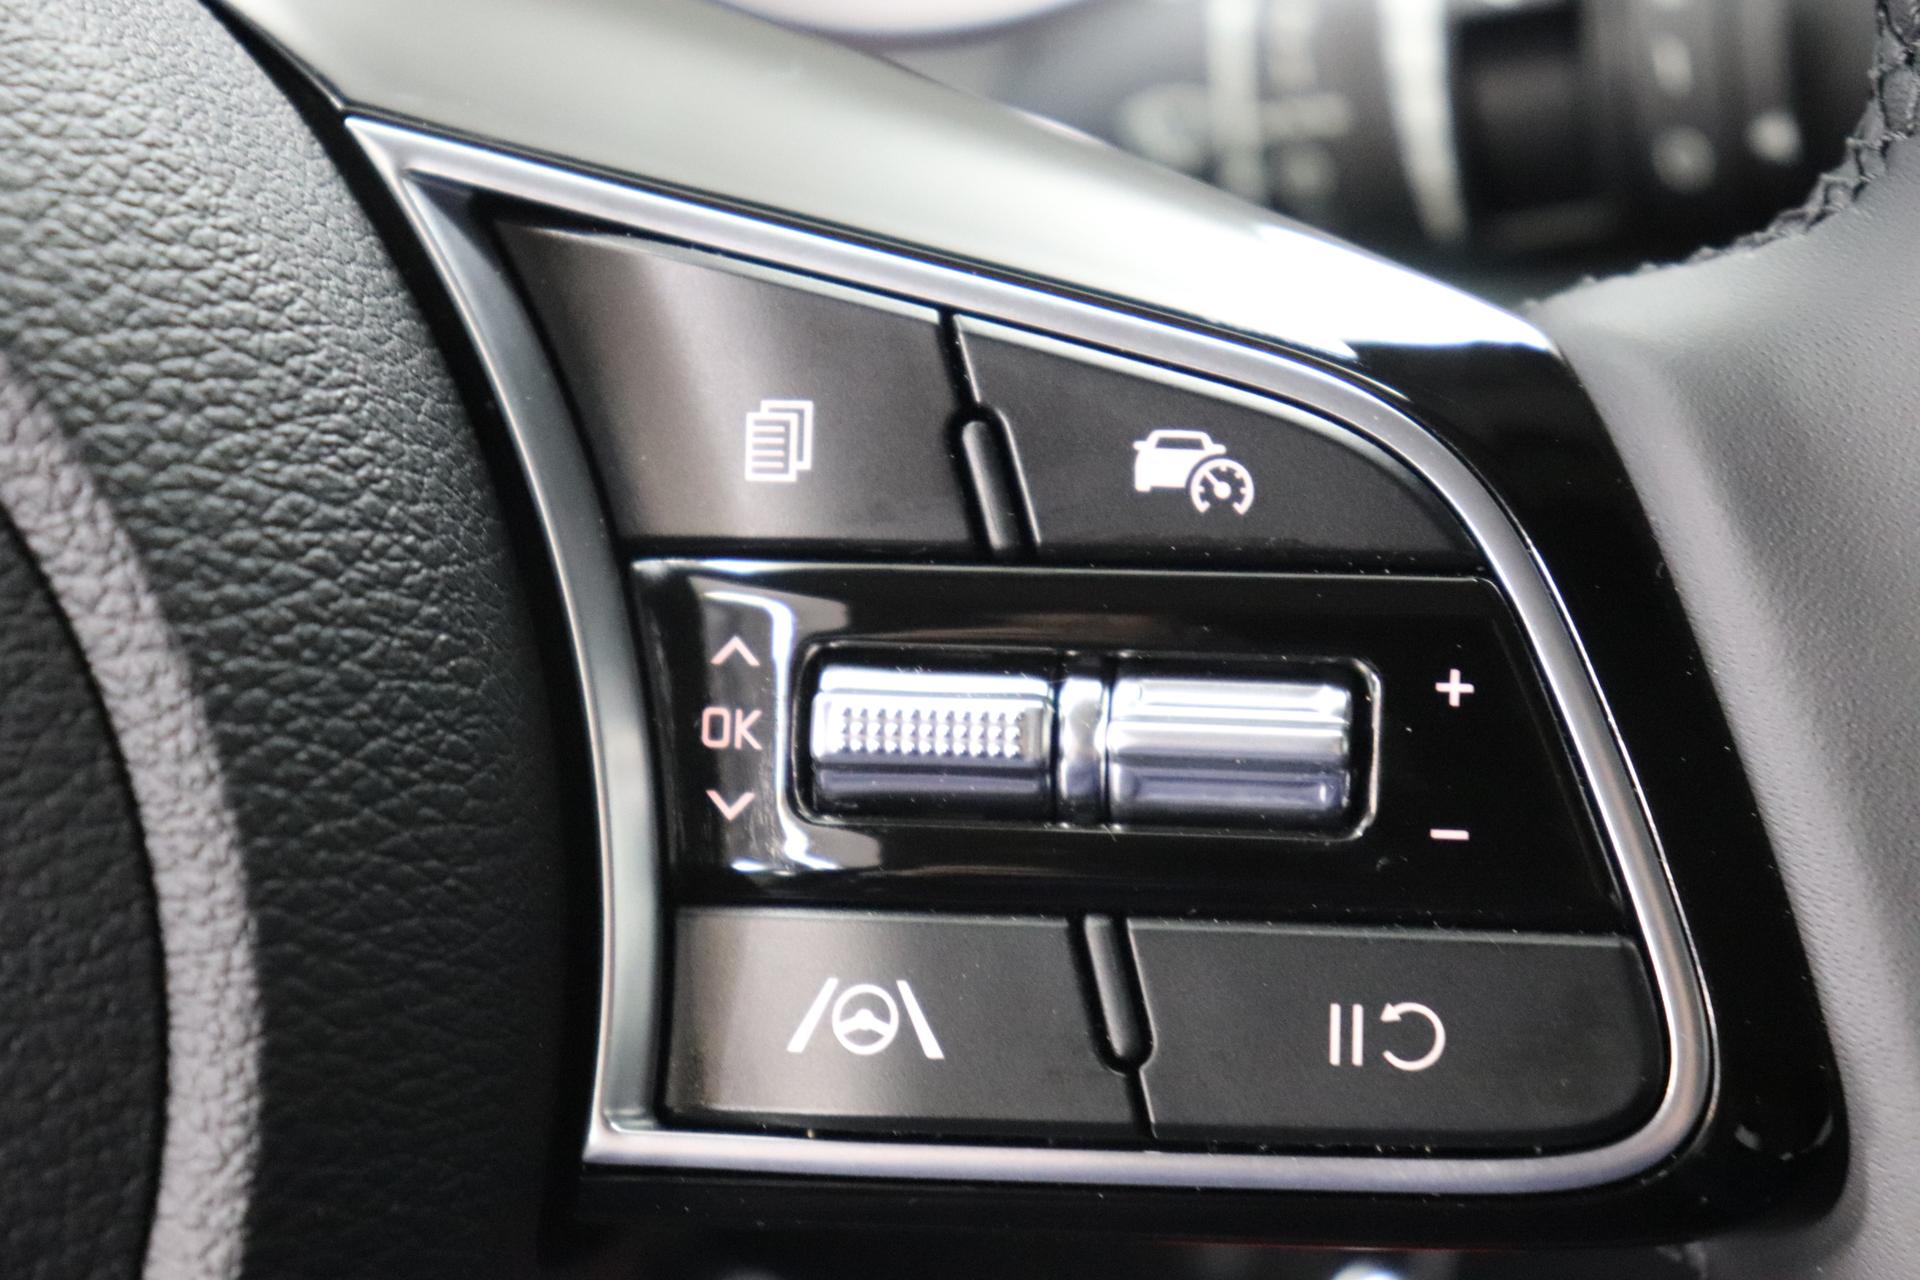 Kia Ceed Sportswagon Silver 1.0 T-GDI 74 kW (101 PS) Klimaanlage, Radio, DAB,  Sitzheizung, Lenkradheizung, Bluetooth, Freisprecheinrichtung, Lichtsensor, Einparkhilfe  hinten, Tempomat, Frontkolisionswarner, Spurfolgeassistent, uvm.